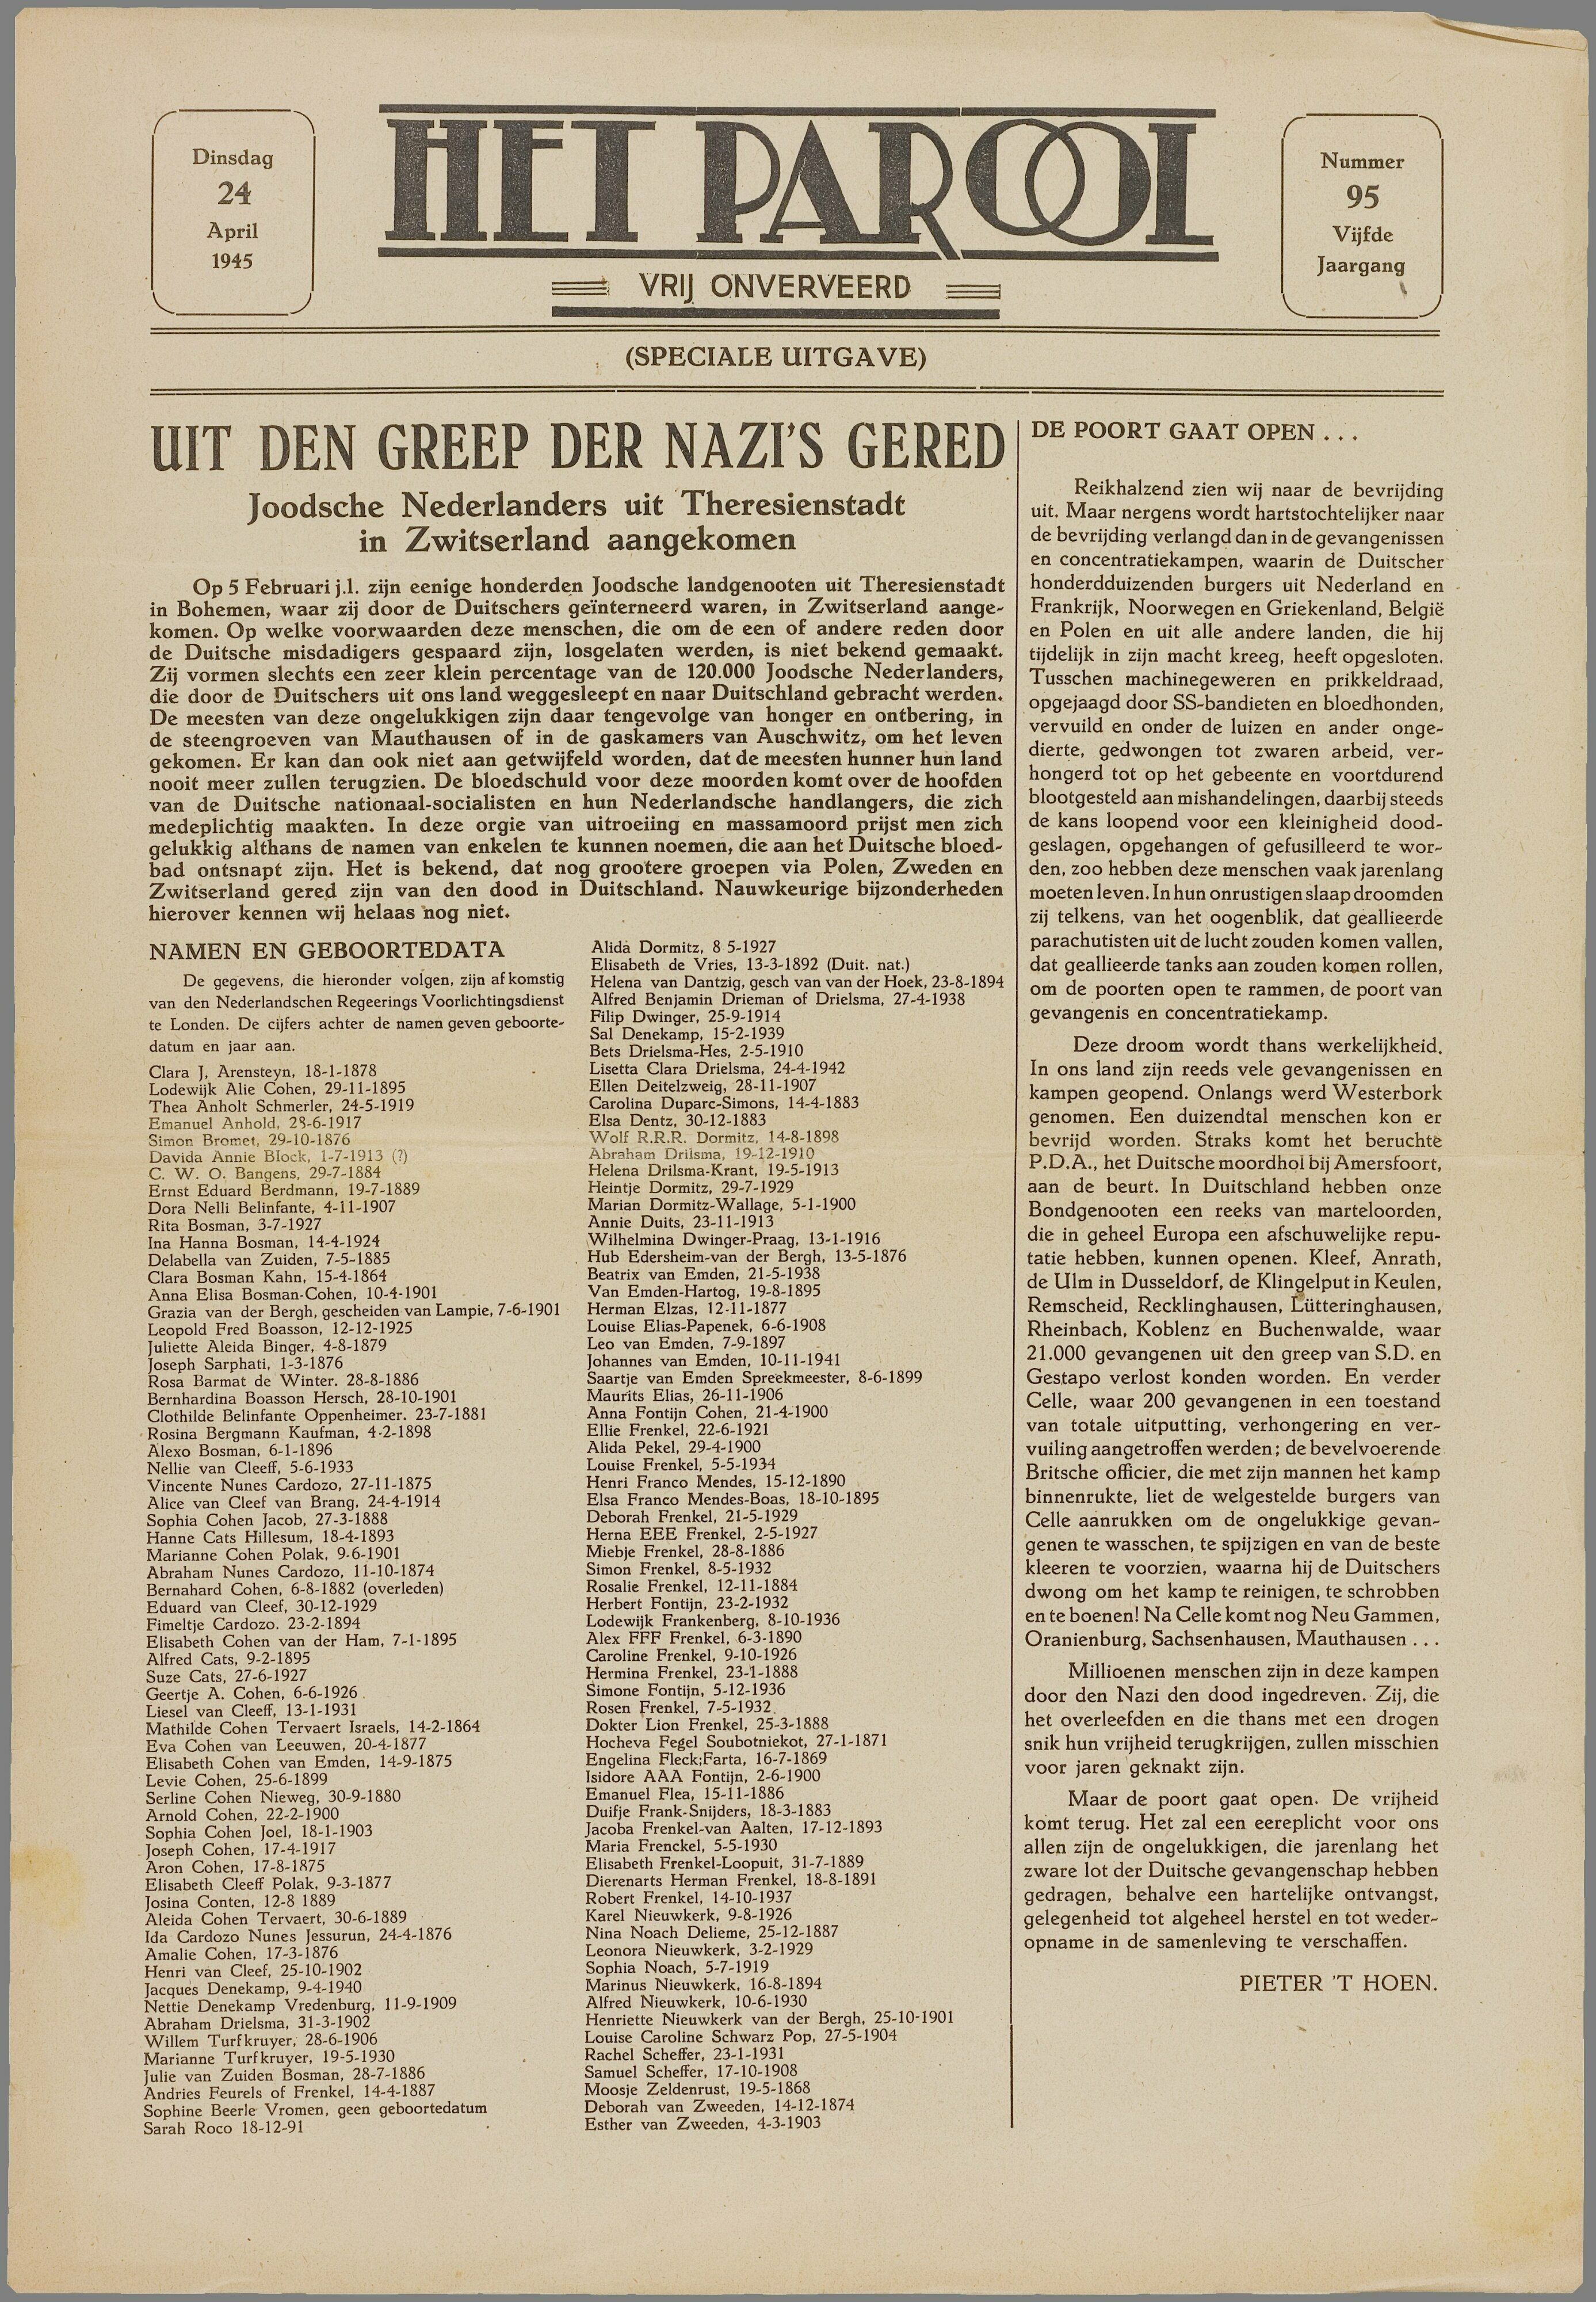 Het Parool, 24 april 1945. Namen van personen op het uitwisselingstransport.